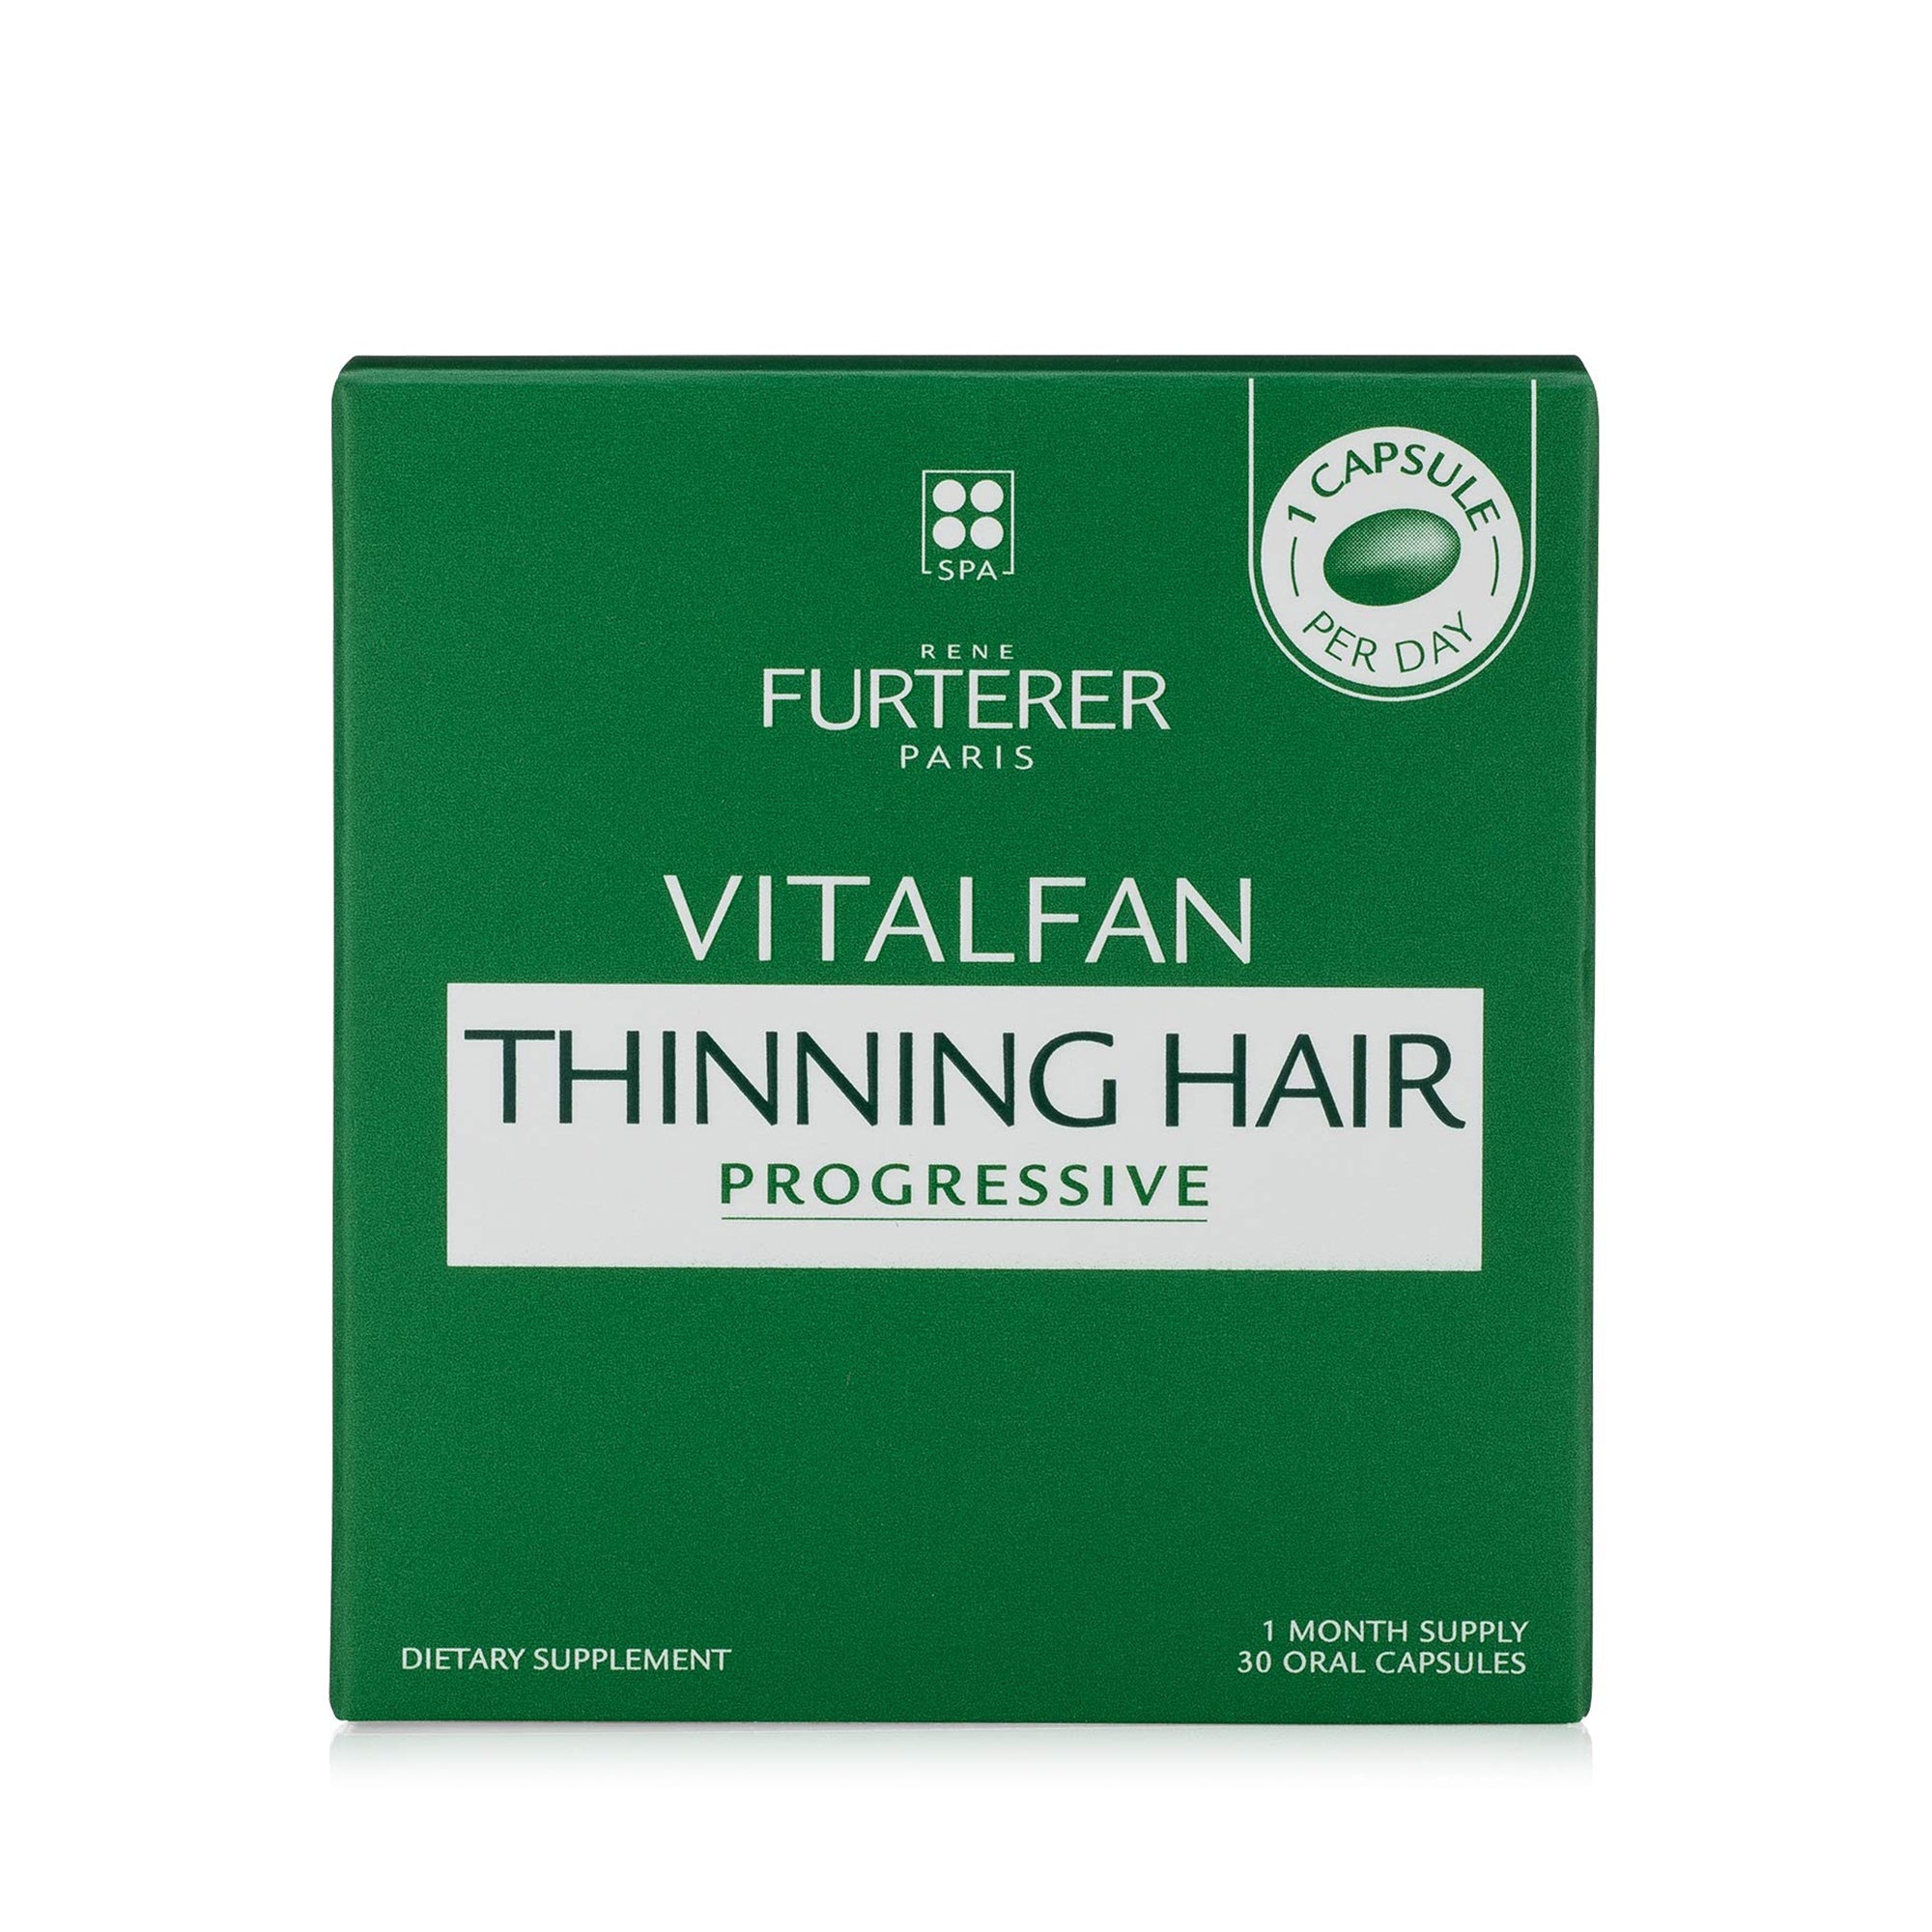 Rene Furterer Vitaflan For Progressive Thinning Hair / 30PCS